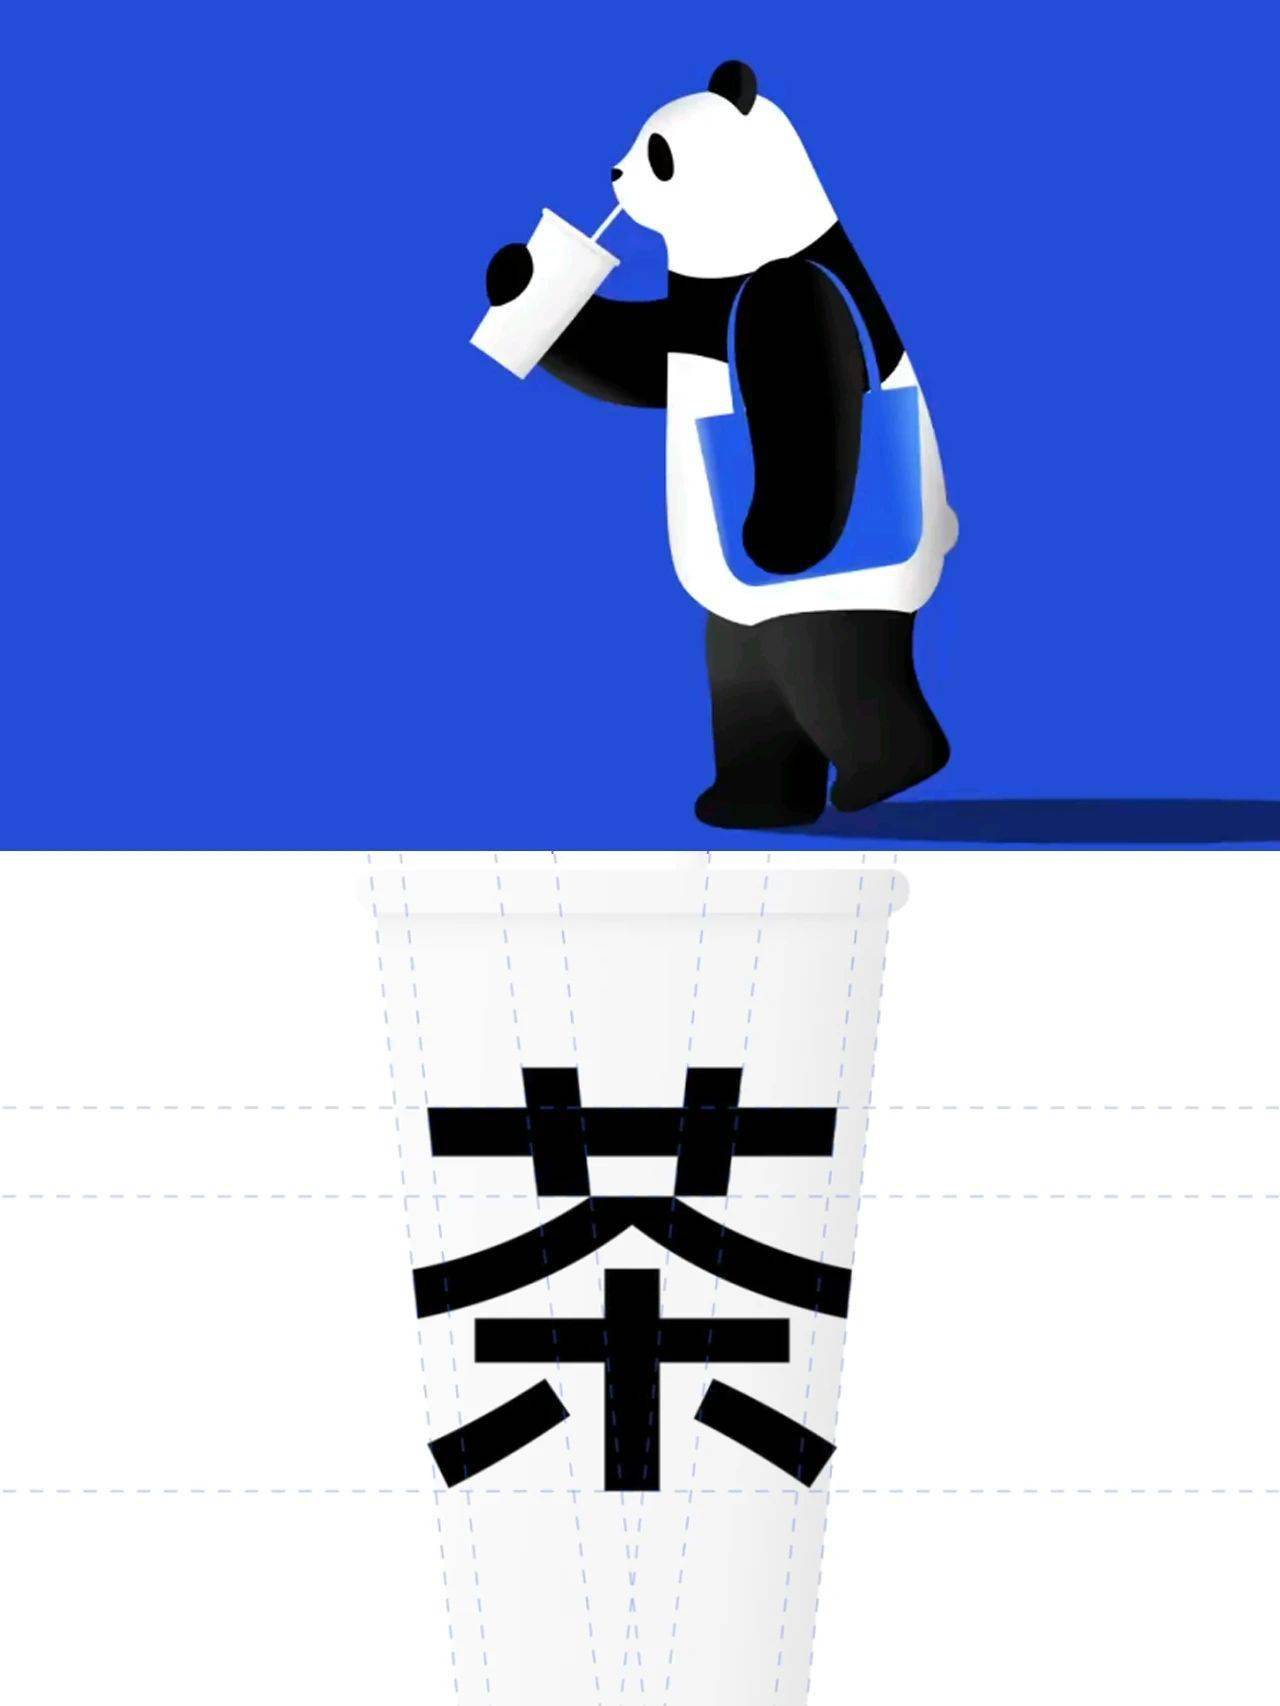 茶百道熊猫 蓝色图片